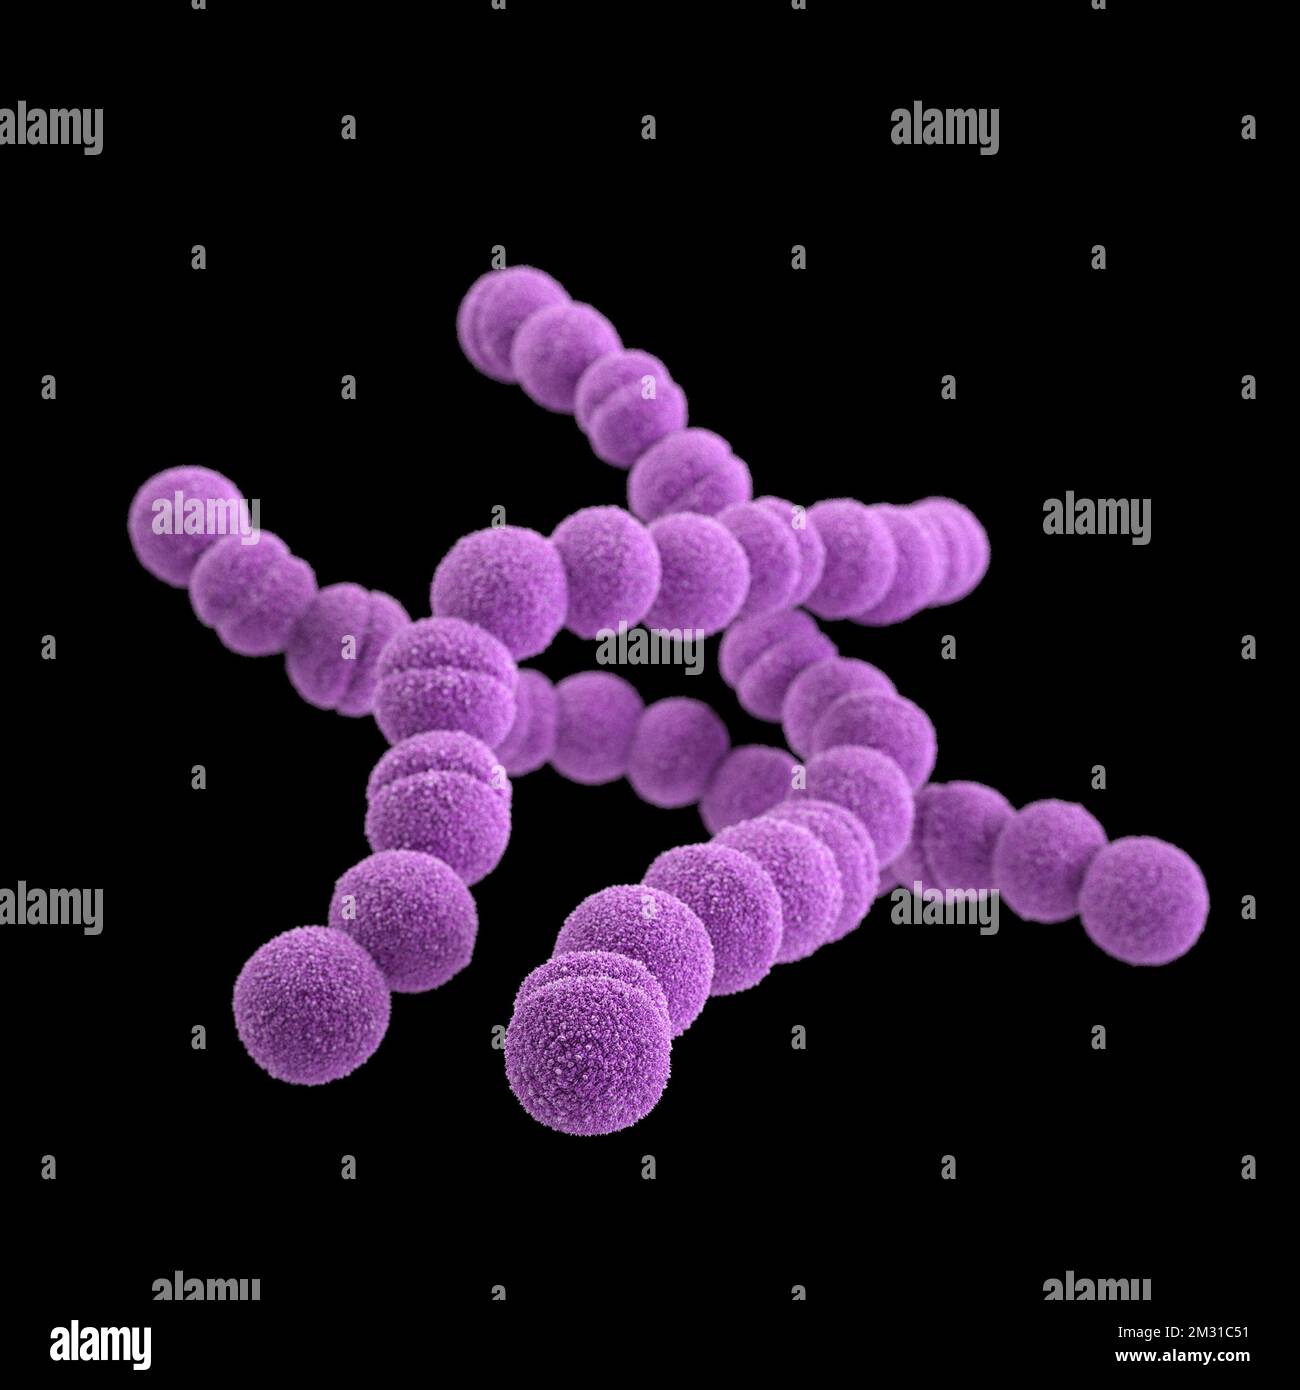 Batteri streptococchi del gruppo A. STREP A Streptococcus pyogenes è una specie di batterio gram-positivo, aerotolerante, appartenente al genere Streptococcus. Questi batteri sono extracellulari, e costituiti da cocci non motili e non spori che tendono a legarsi in catene. Questa illustrazione raffigurava un'immagine 3D, generata dal computer, di un gruppo di batteri Gram-positivi, Streptococcus pyogenes (Streptococcus gruppo A). La visualizzazione era basata su immagini al microscopio elettronico a scansione (SEM). Versione ottimizzata di un'immagine prodotta dai Centri statunitensi per il controllo e la prevenzione delle malattie / Credit CDC /J.Oosthuizen Foto Stock